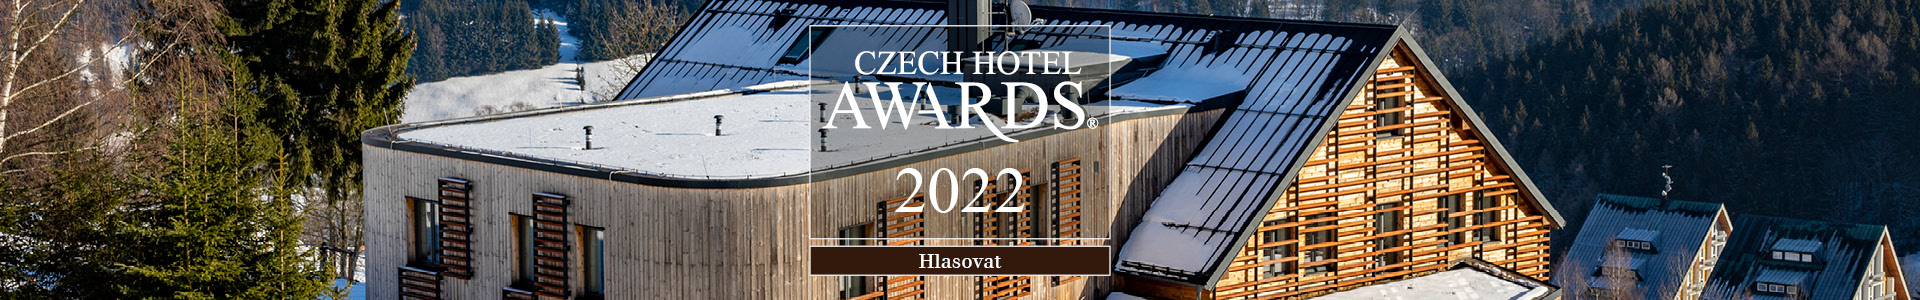 Czech Hotel Awards 2022-banner-web_1920x300_2